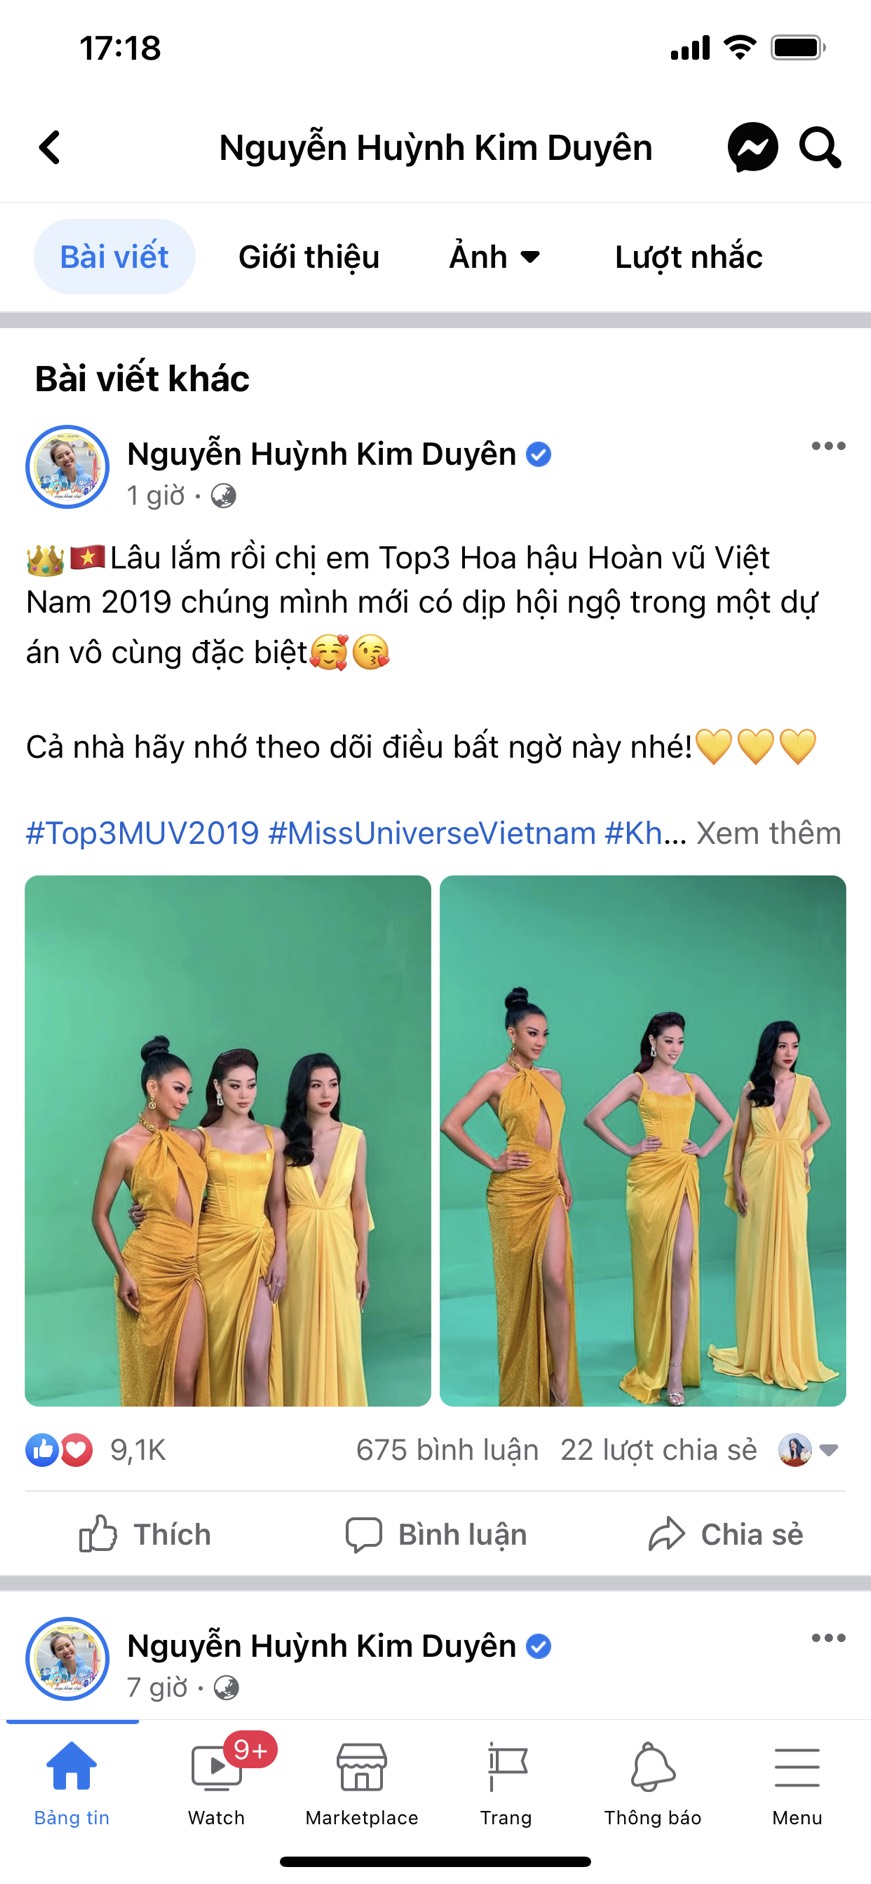 Bài đăng mới đây của Á hậu Kim Duyên trong hoạt động mới của top 3 Hoa hậu Hoàn vũ Việt Nam 2019